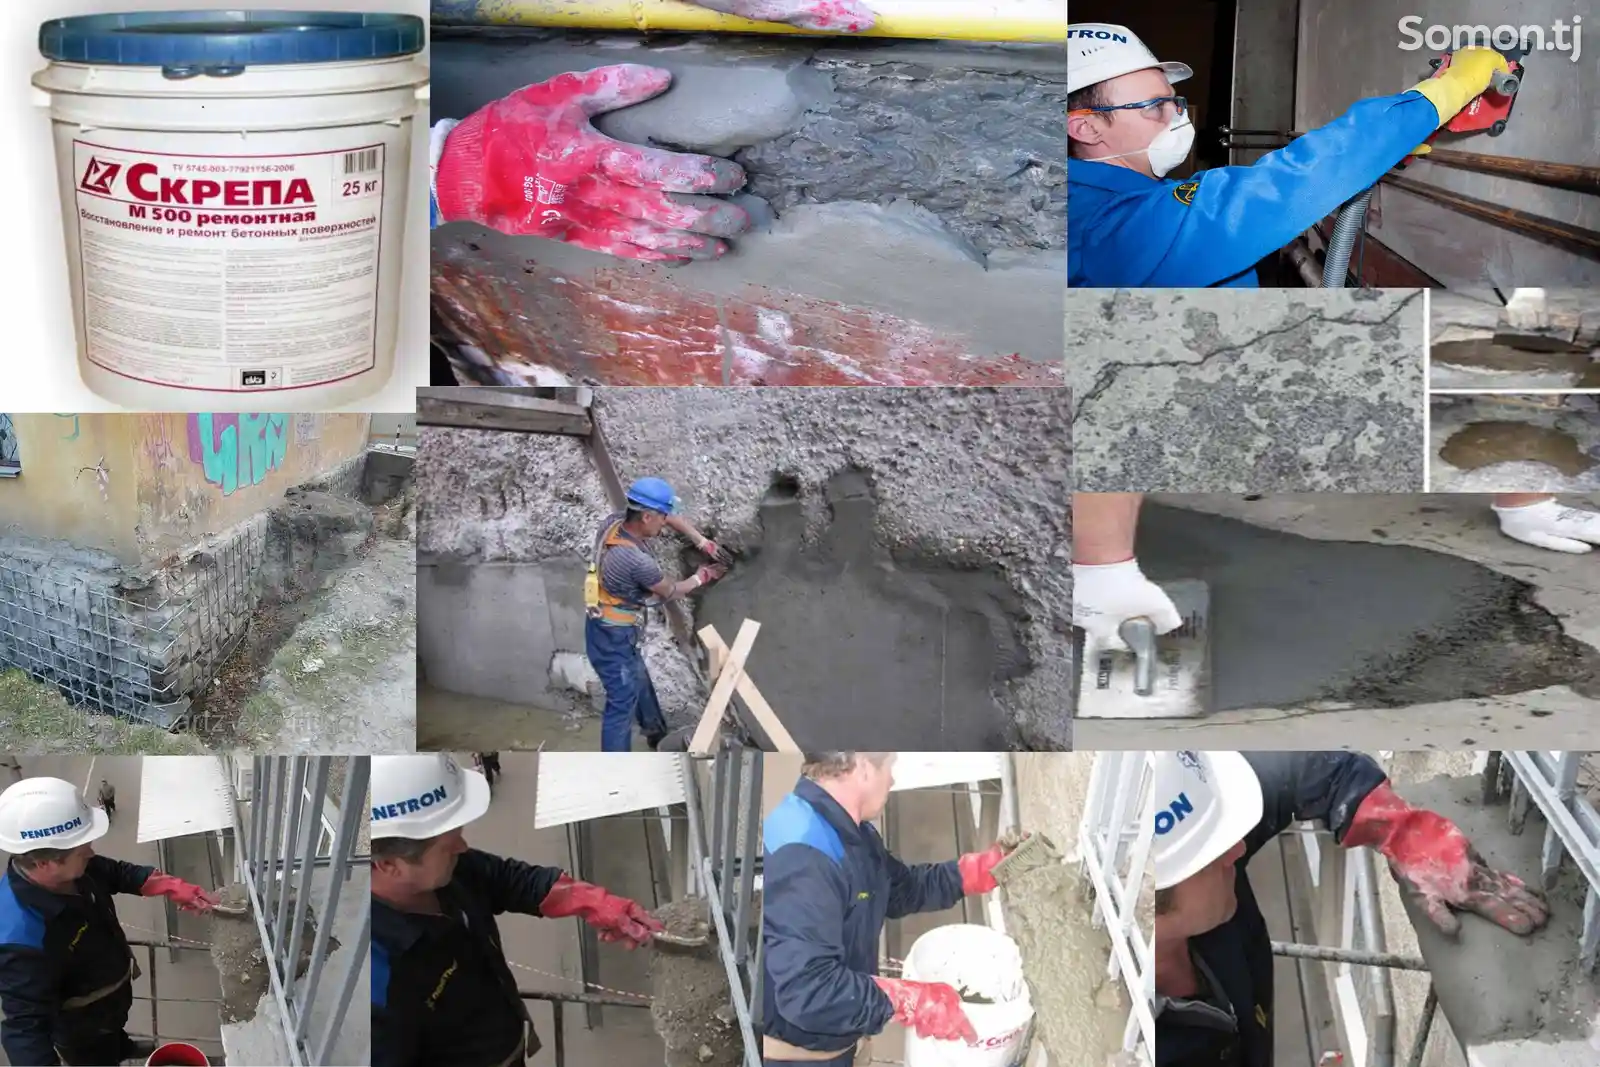 Скрепа M500 ремонтная ремонтный состав восстановление бетона-2